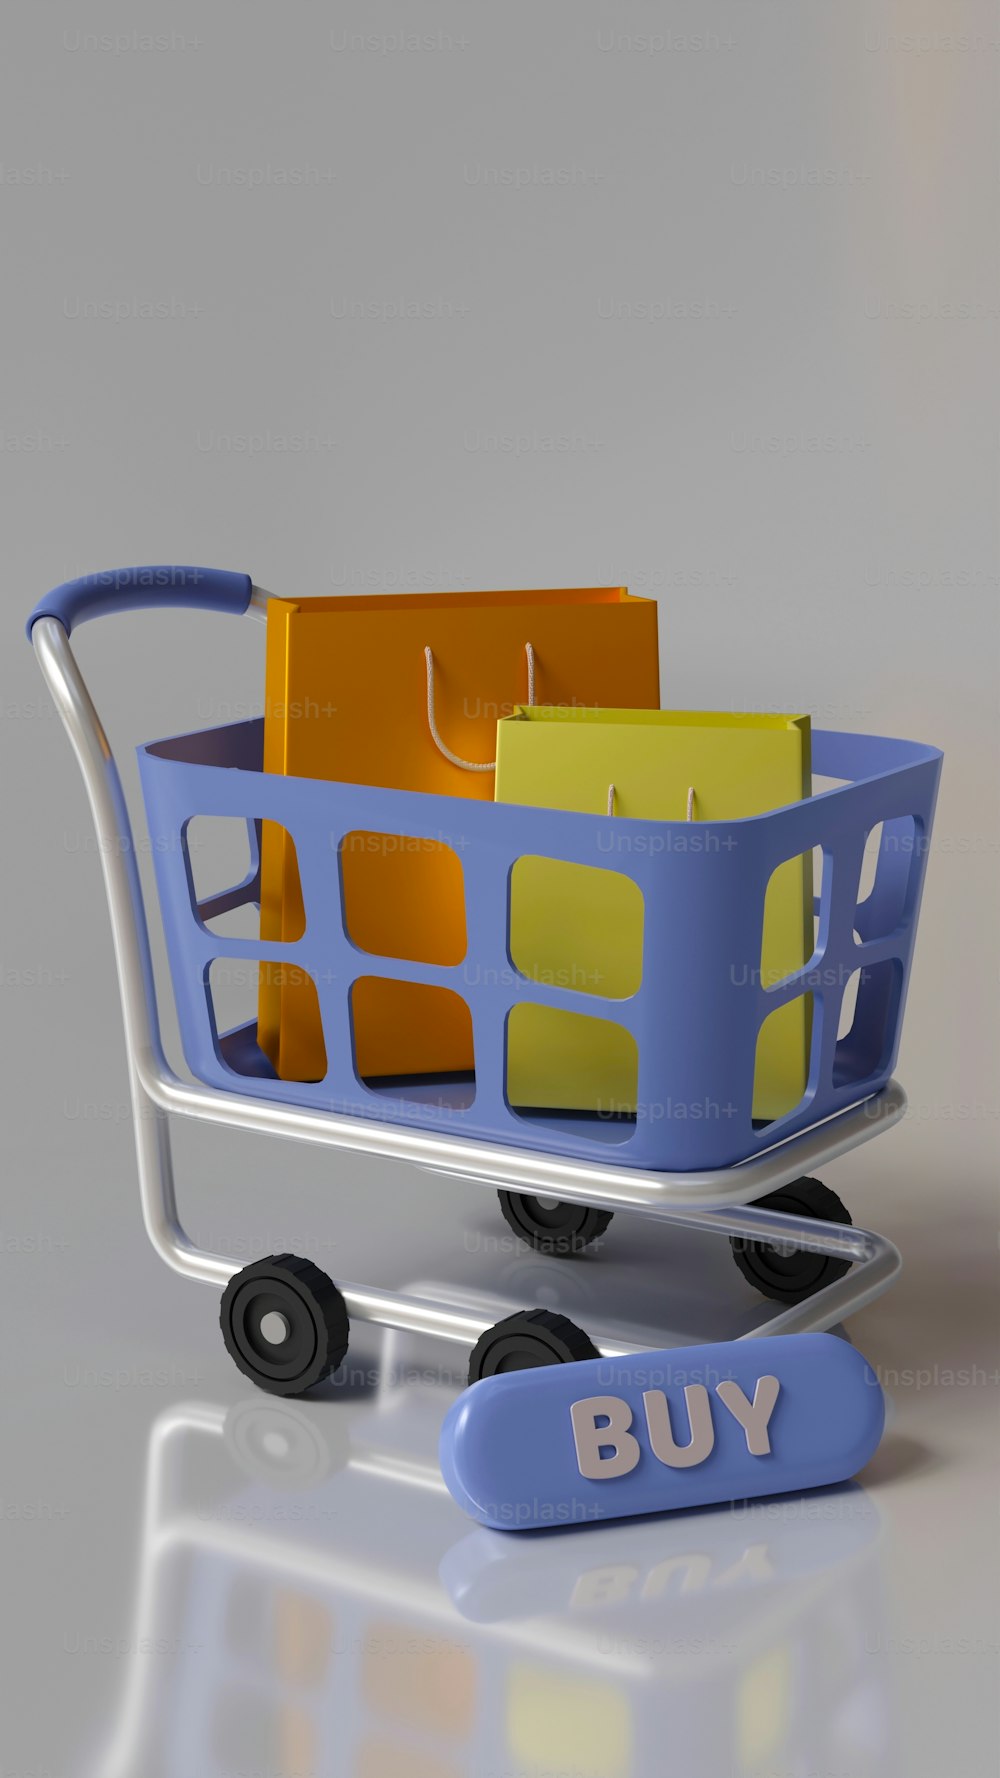 Un carrito de compras con un carrito de compras azul con bolsas de compras amarillas y naranjas